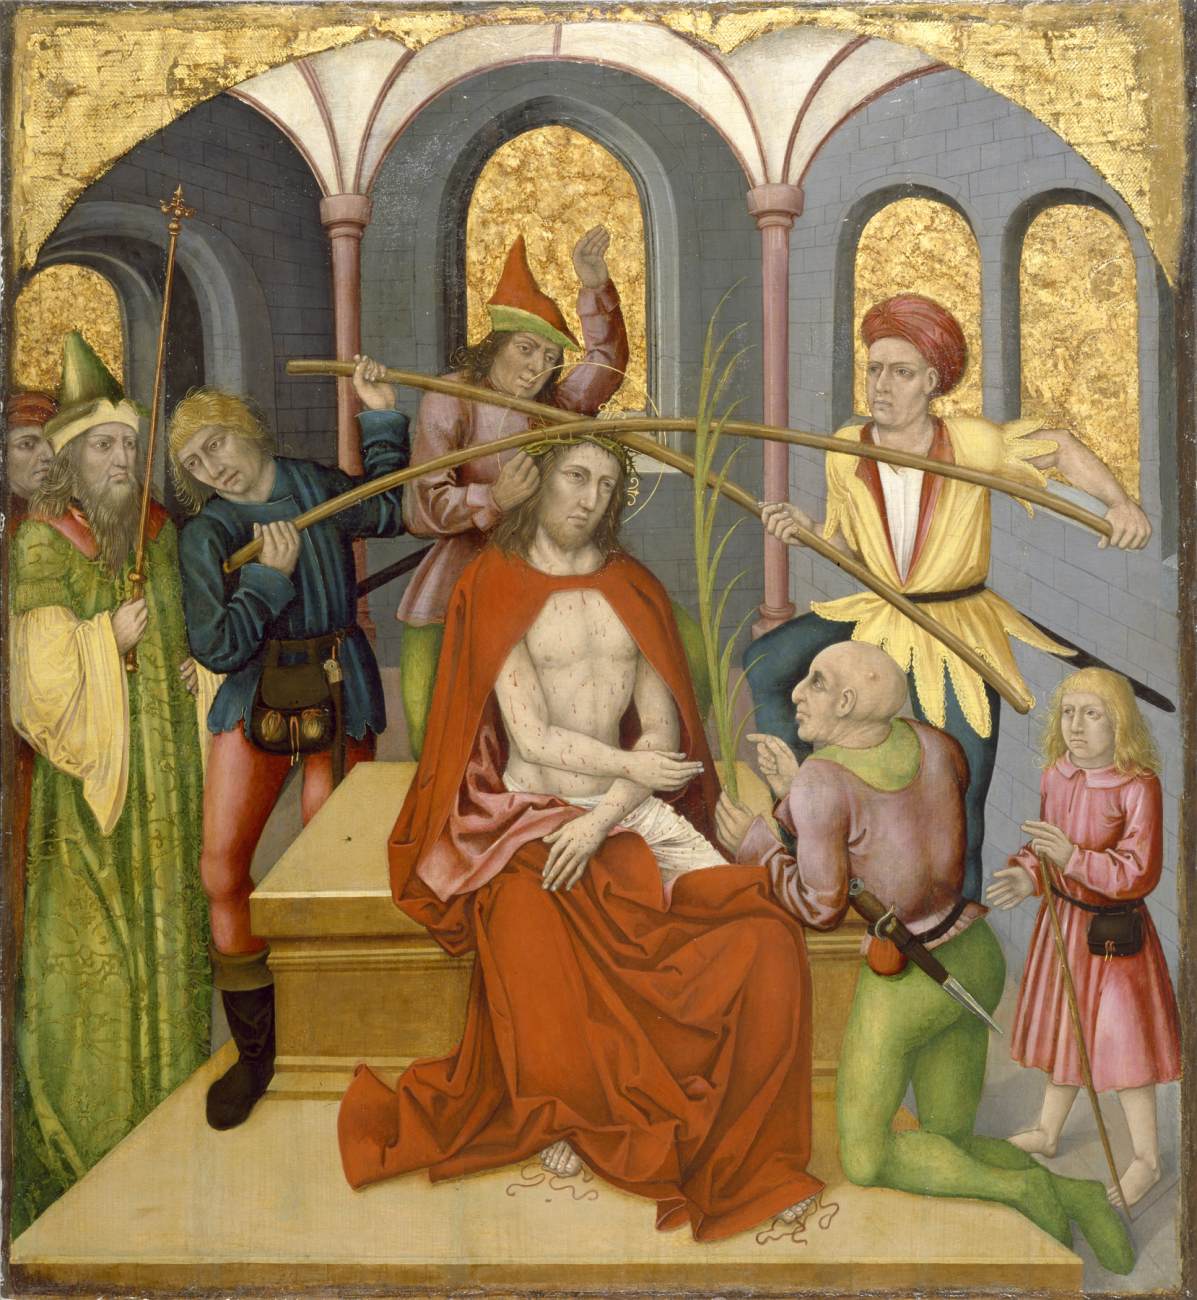 Altarbild mit der Leidenschaft Christi: Christus wird verspottet